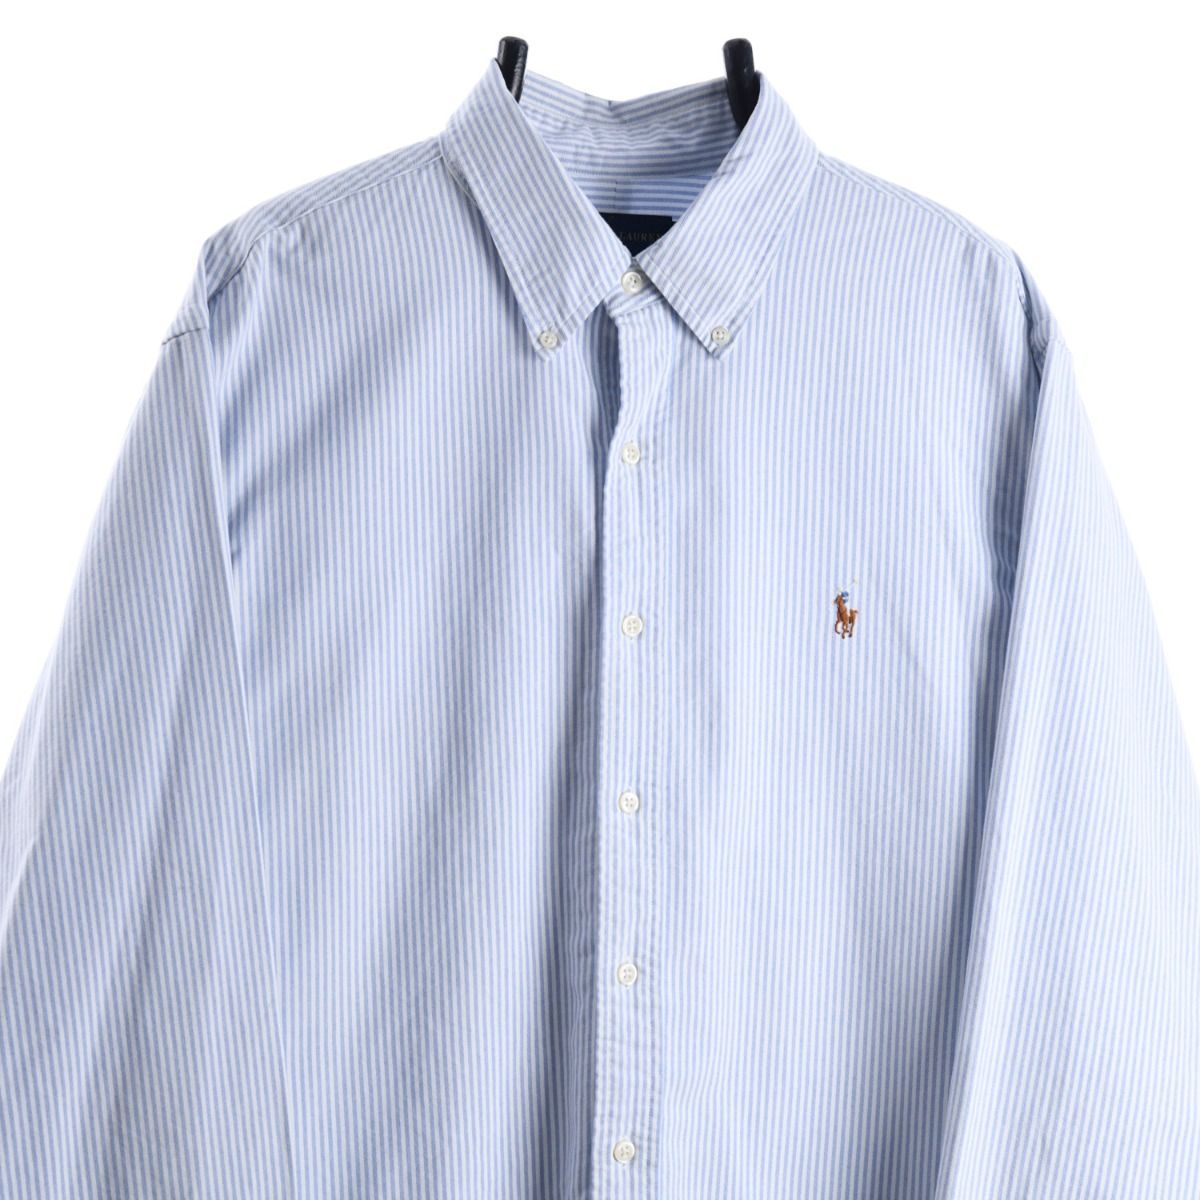 Ralph Lauren Vertical Striped Shirt